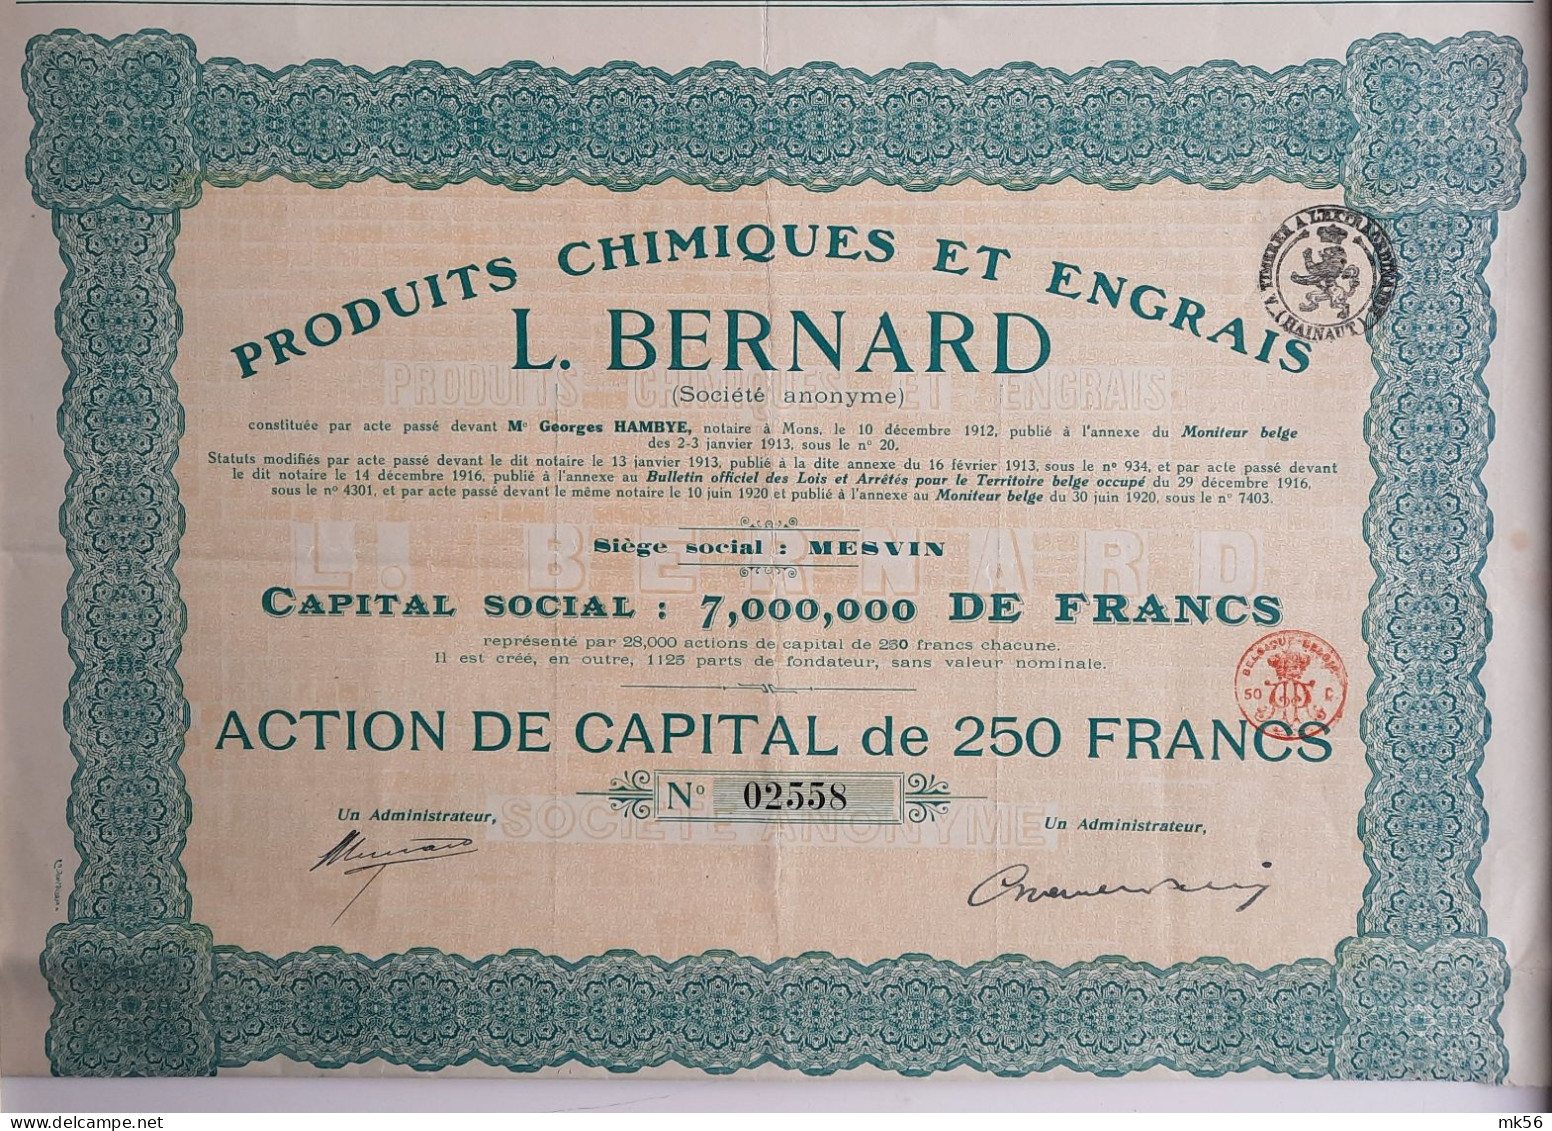 Produits Chimiques Et Engrais - L.Bernard - Mesvin - 1920 - Landbouw